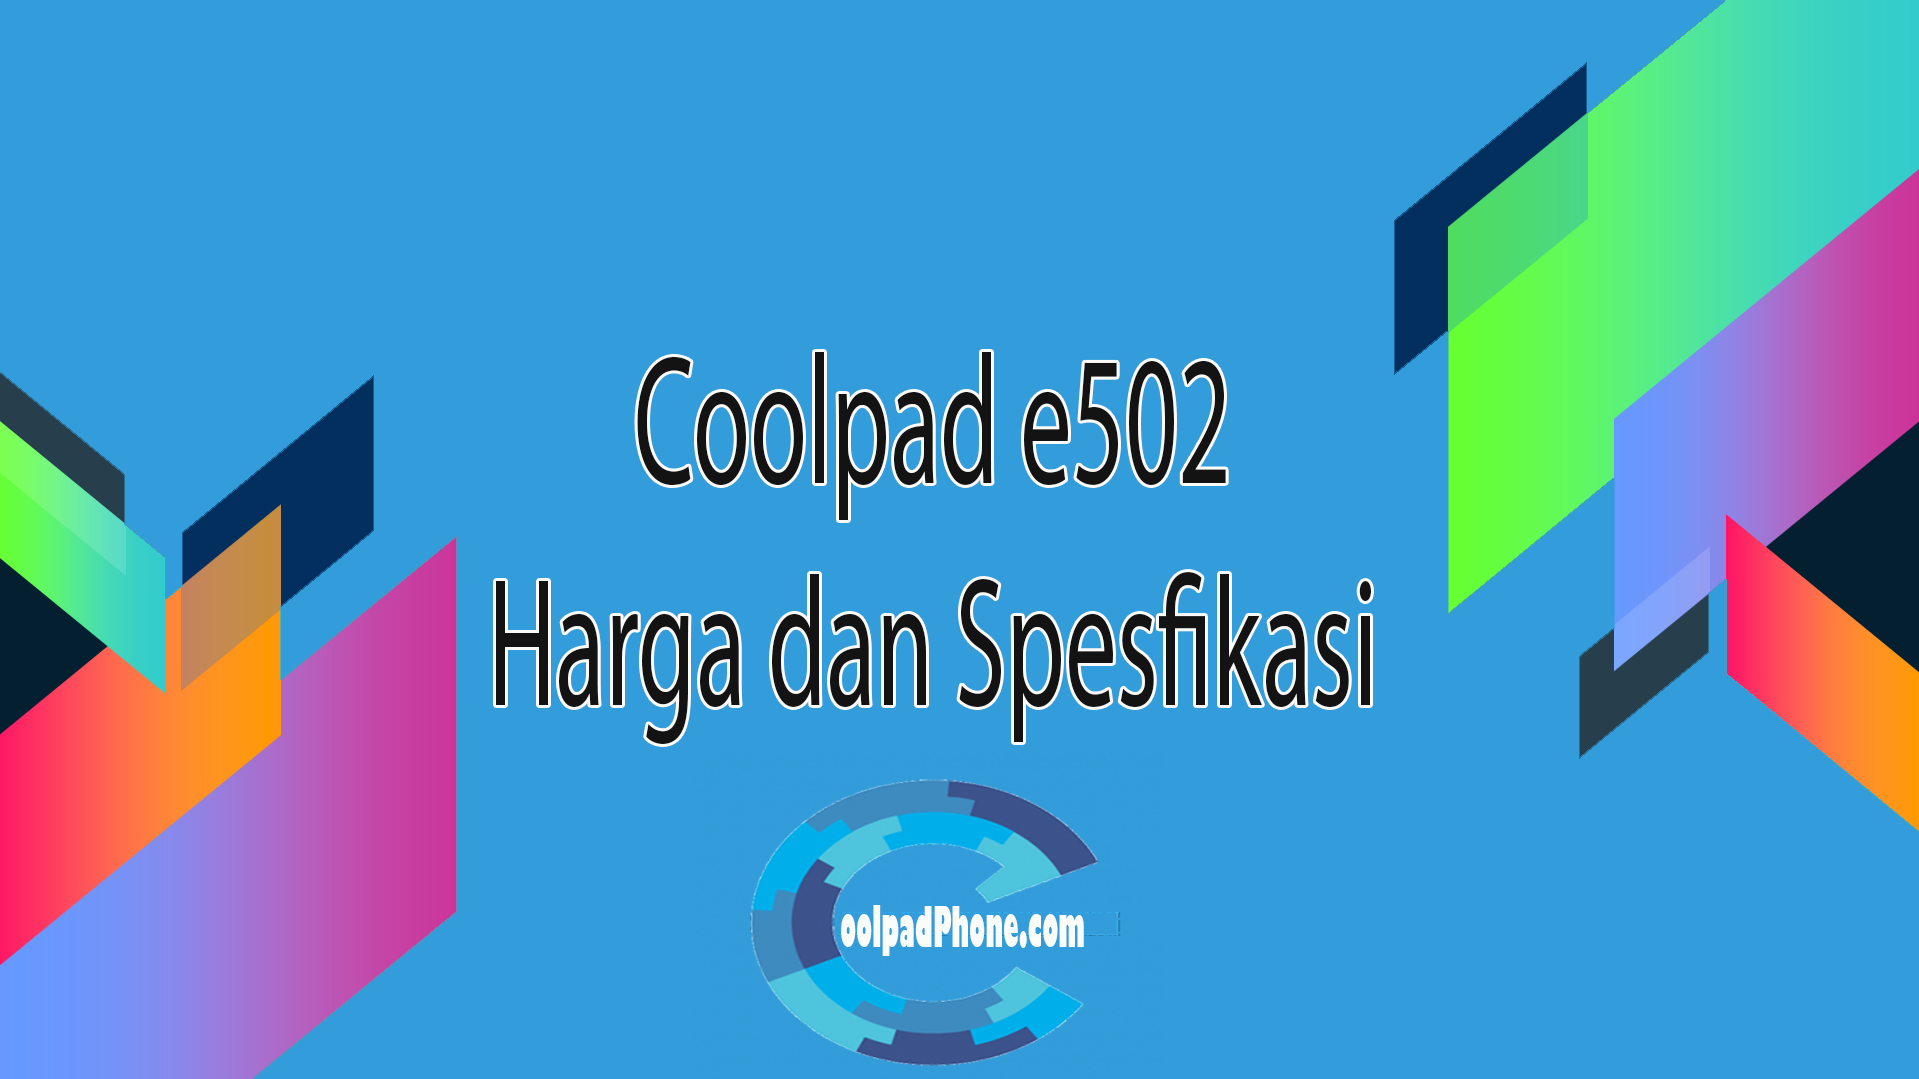 coolpad e502